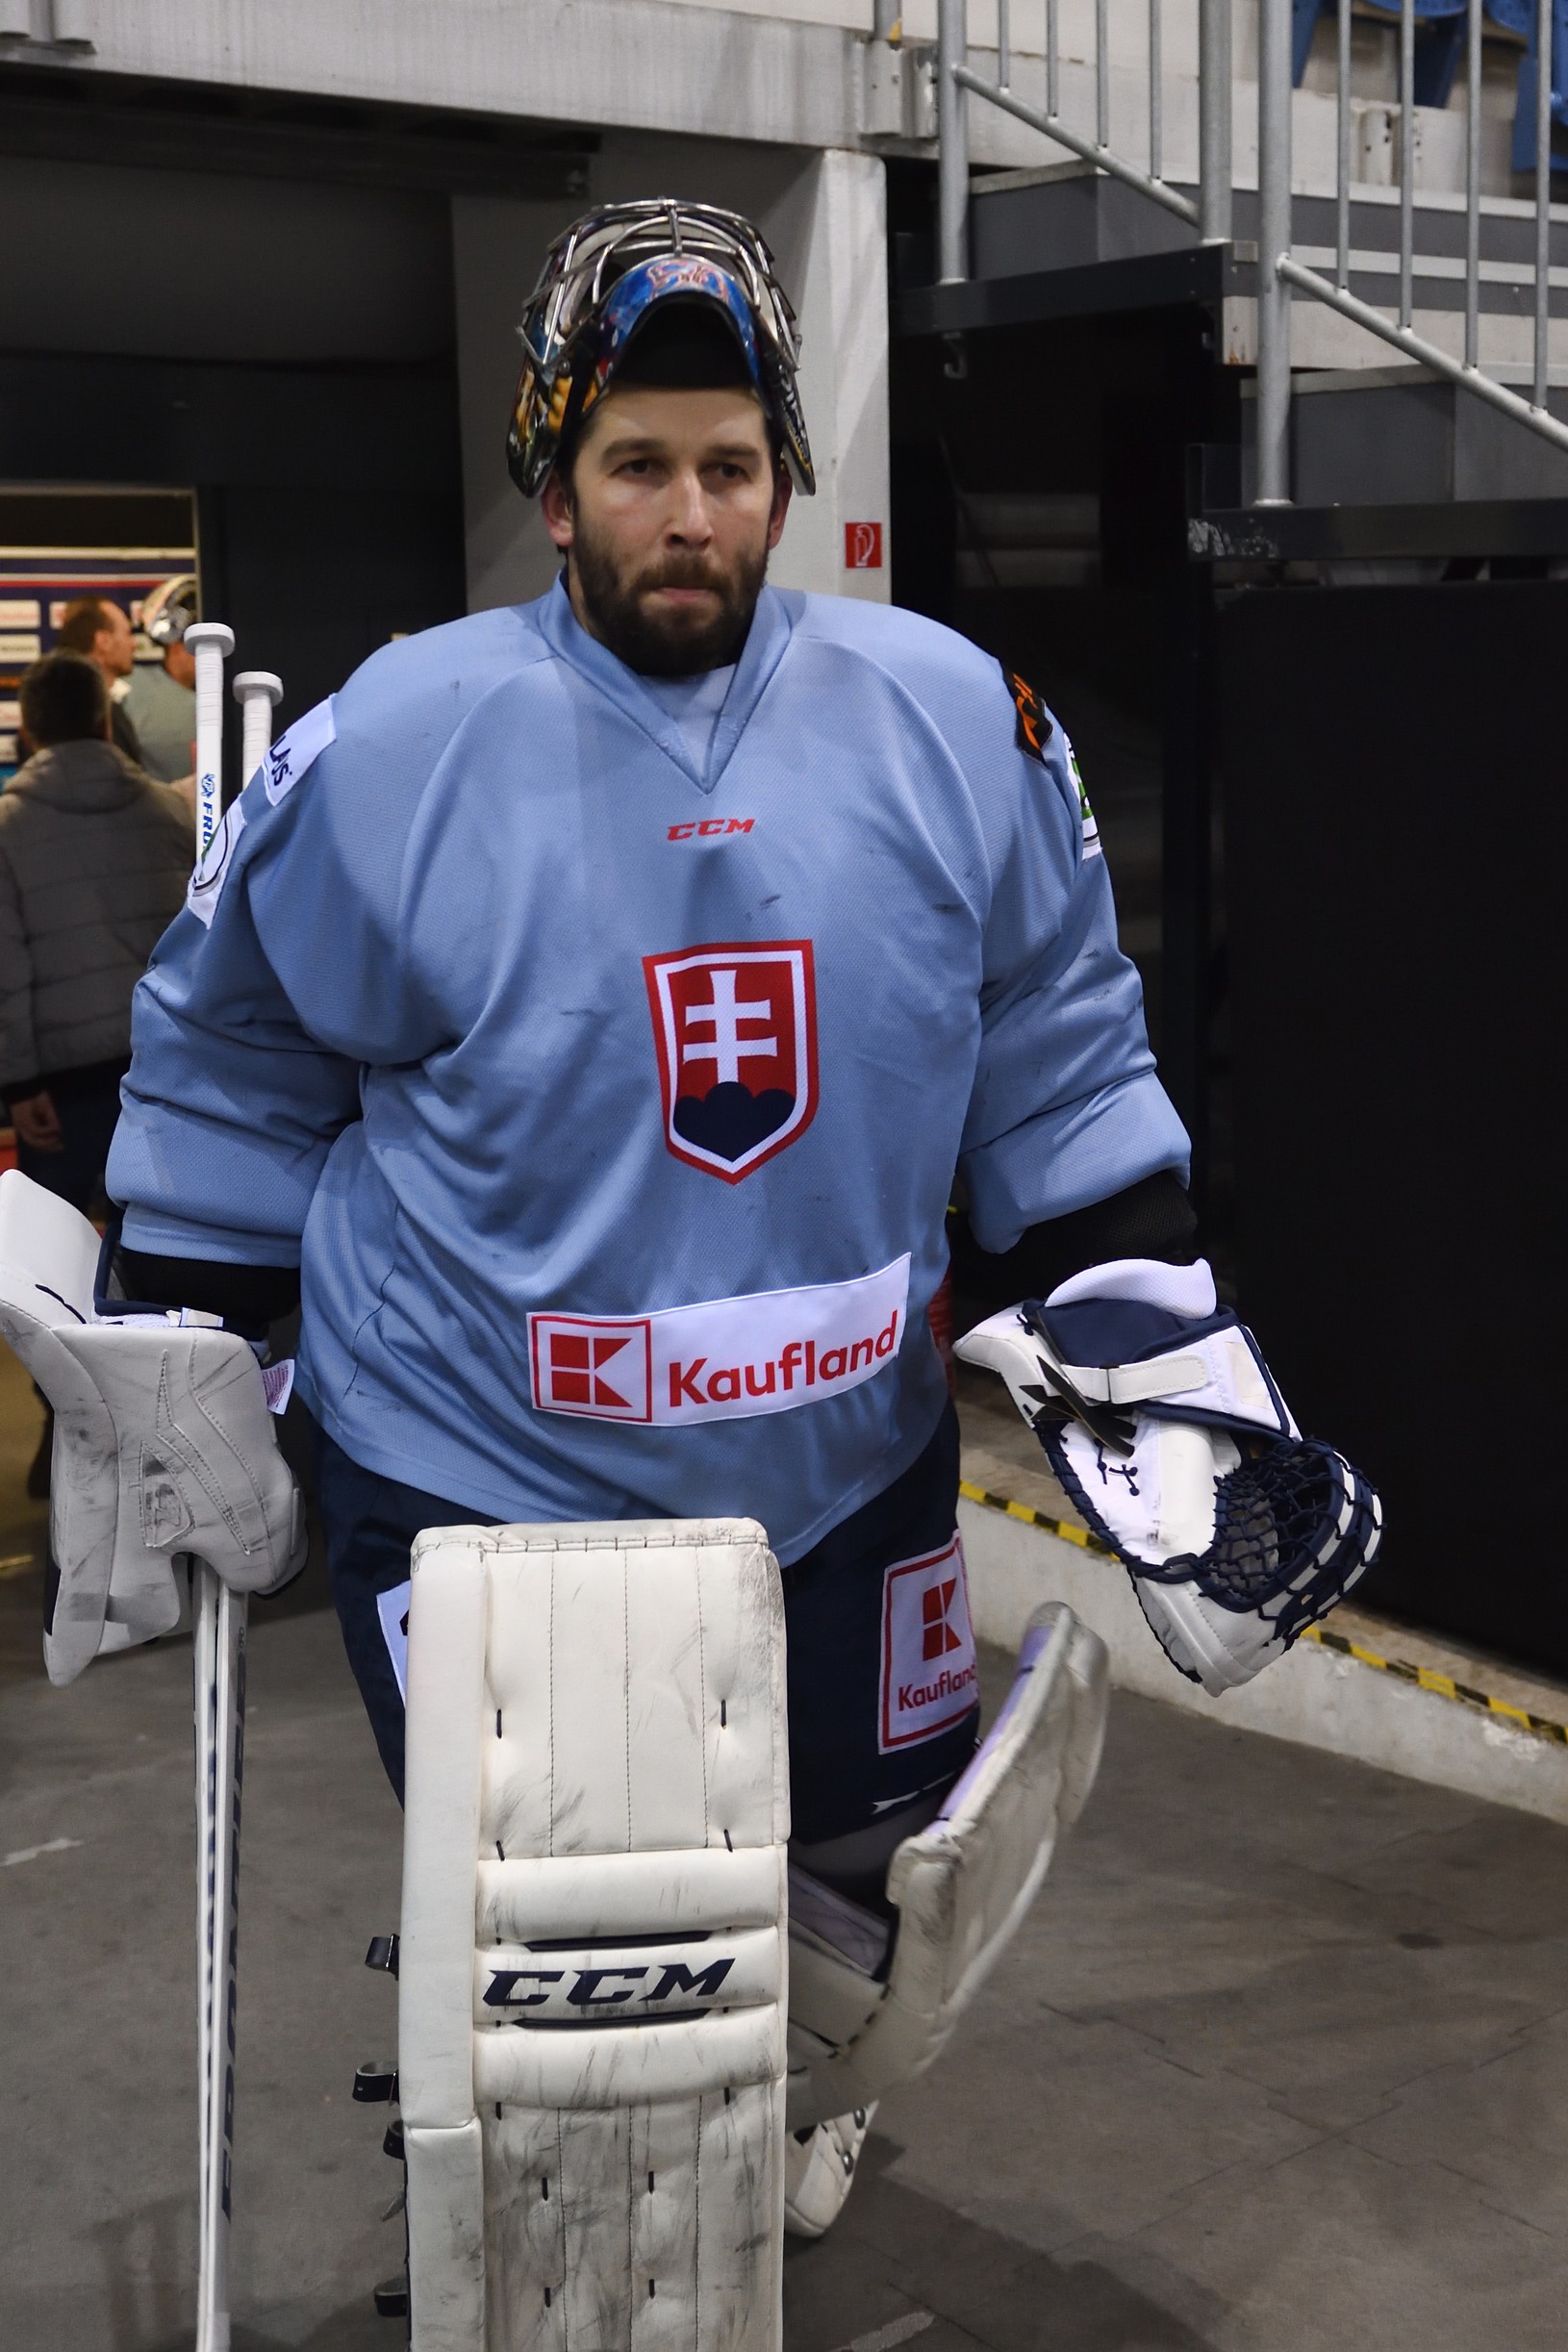 Brankár slovenskej hokejovej reprezentácie